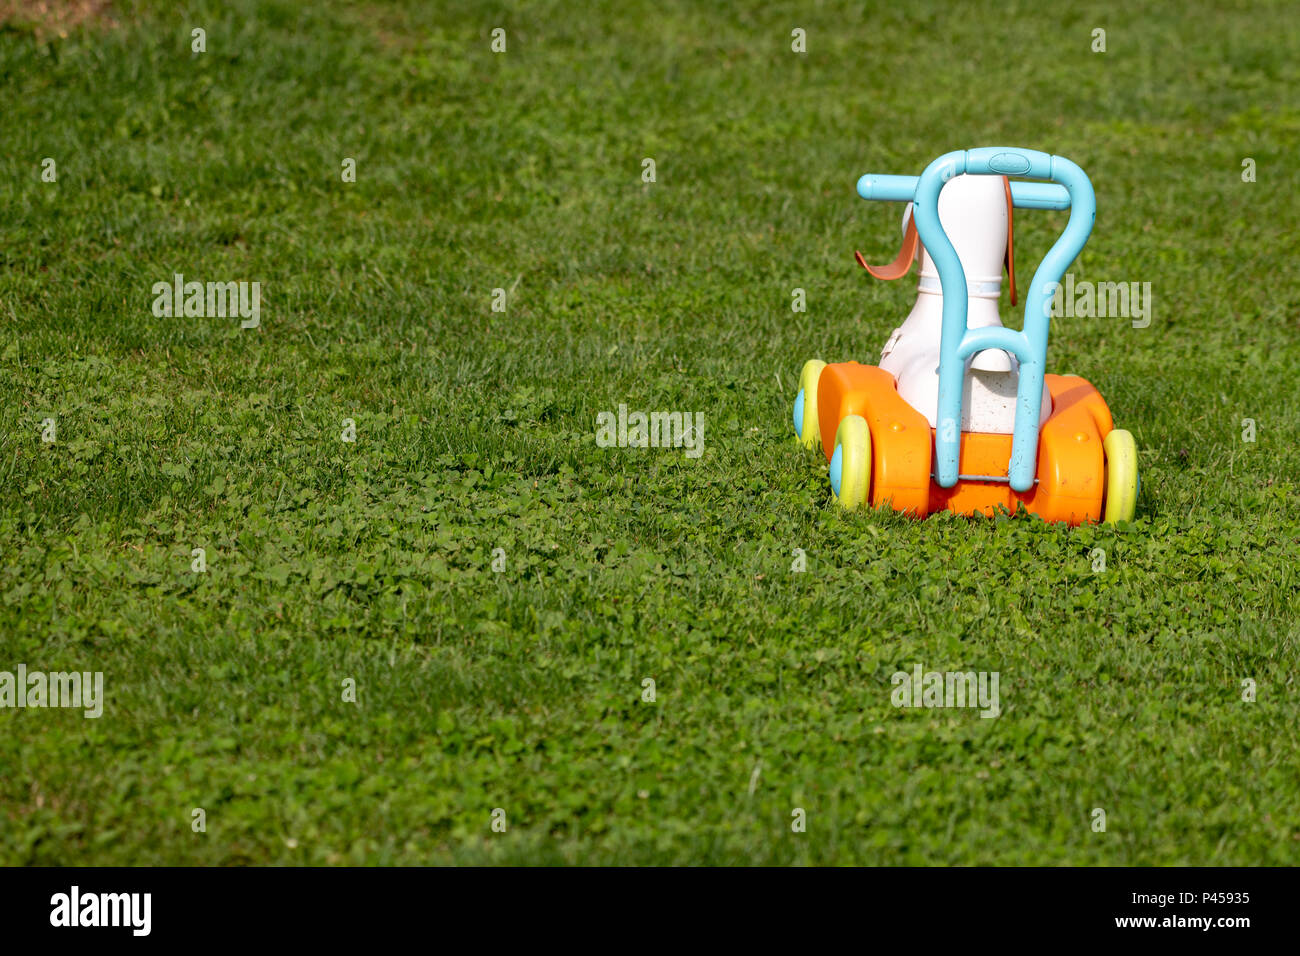 Toy carrello su erba, abbandonato giocattolo, gioco da ragazzi Foto Stock